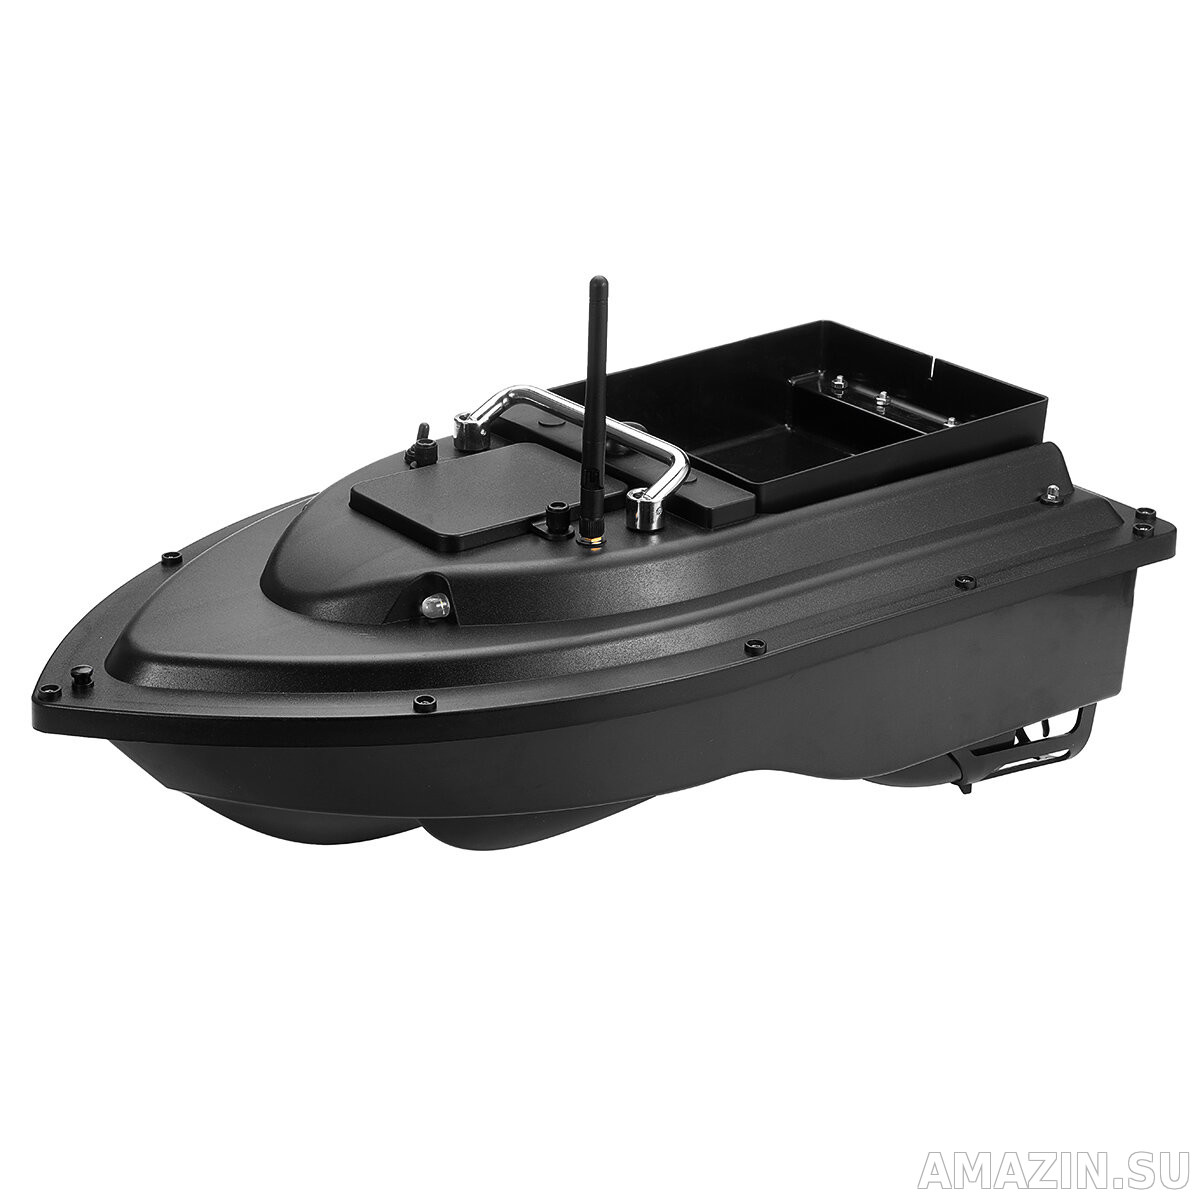 Прикормочный кораблик для завоза прикормки Amazin FishBoat